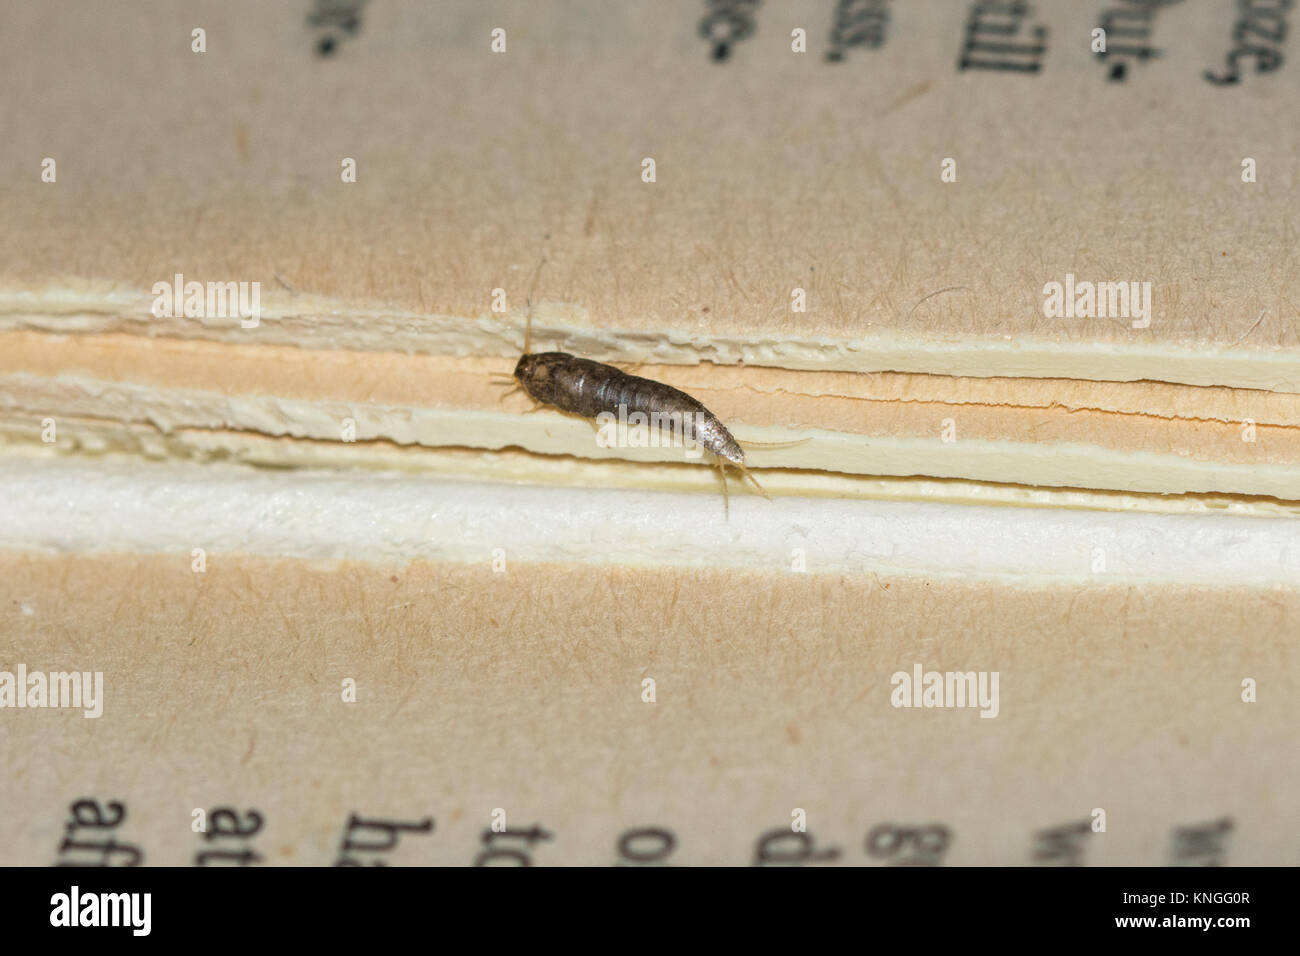 Gemeinsame Silberfische (Lepisma saccharina), Insekt, manchmal eines Haushalts Pest, auf einem alten Buch Stockfoto